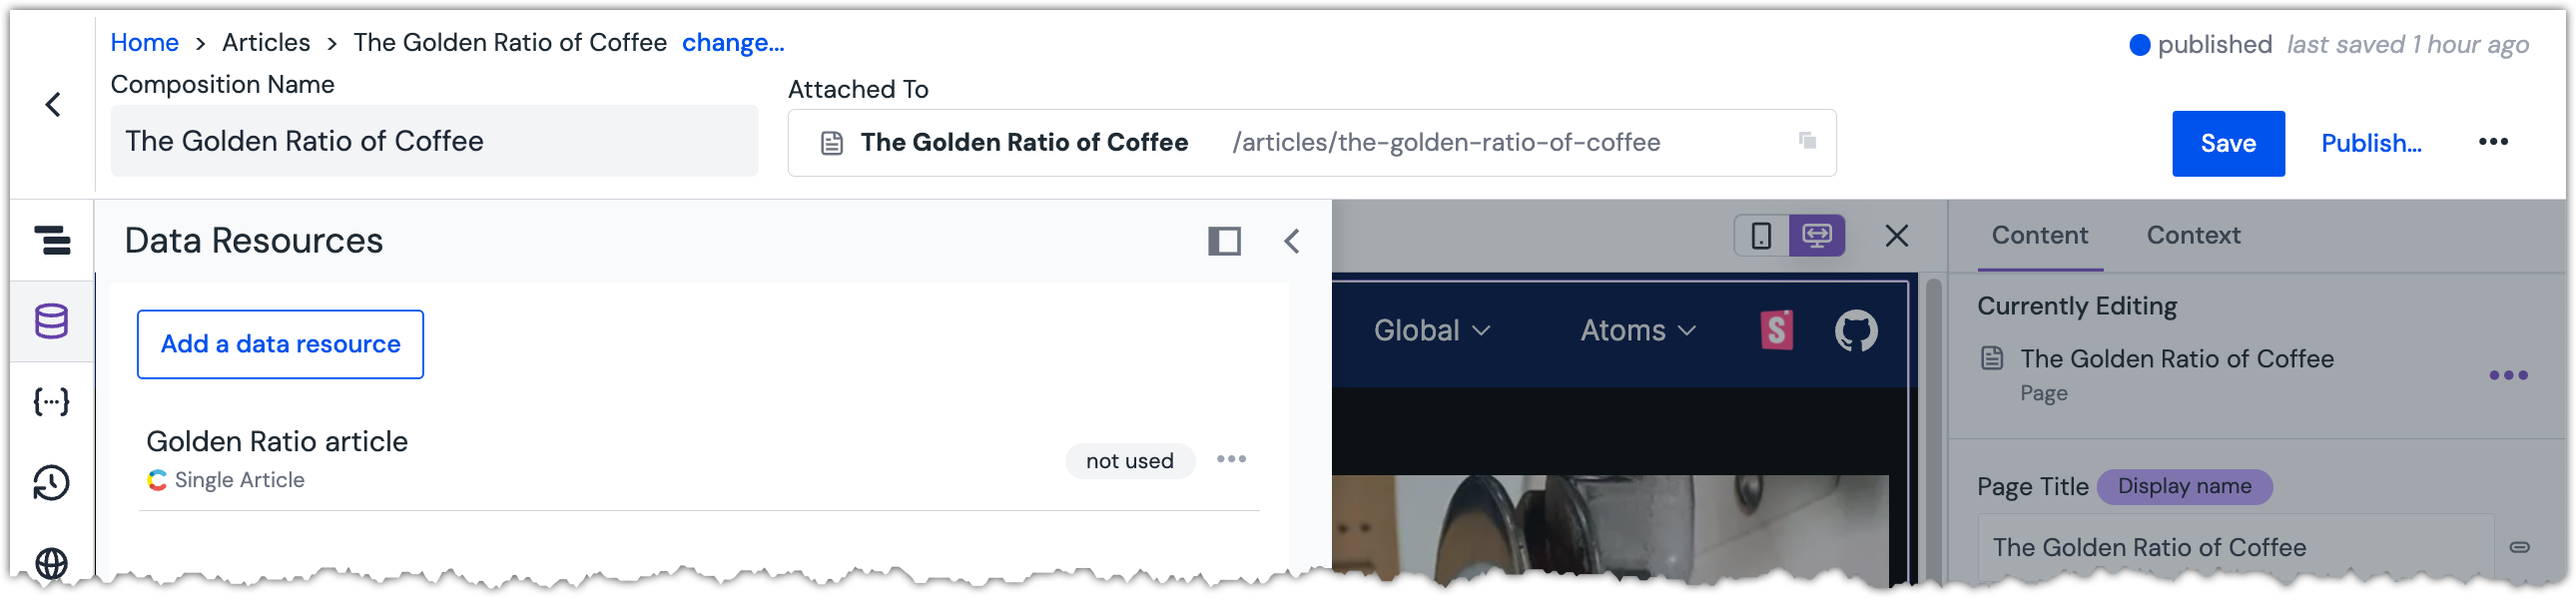 golden-ratio-article-data-resource-contentful